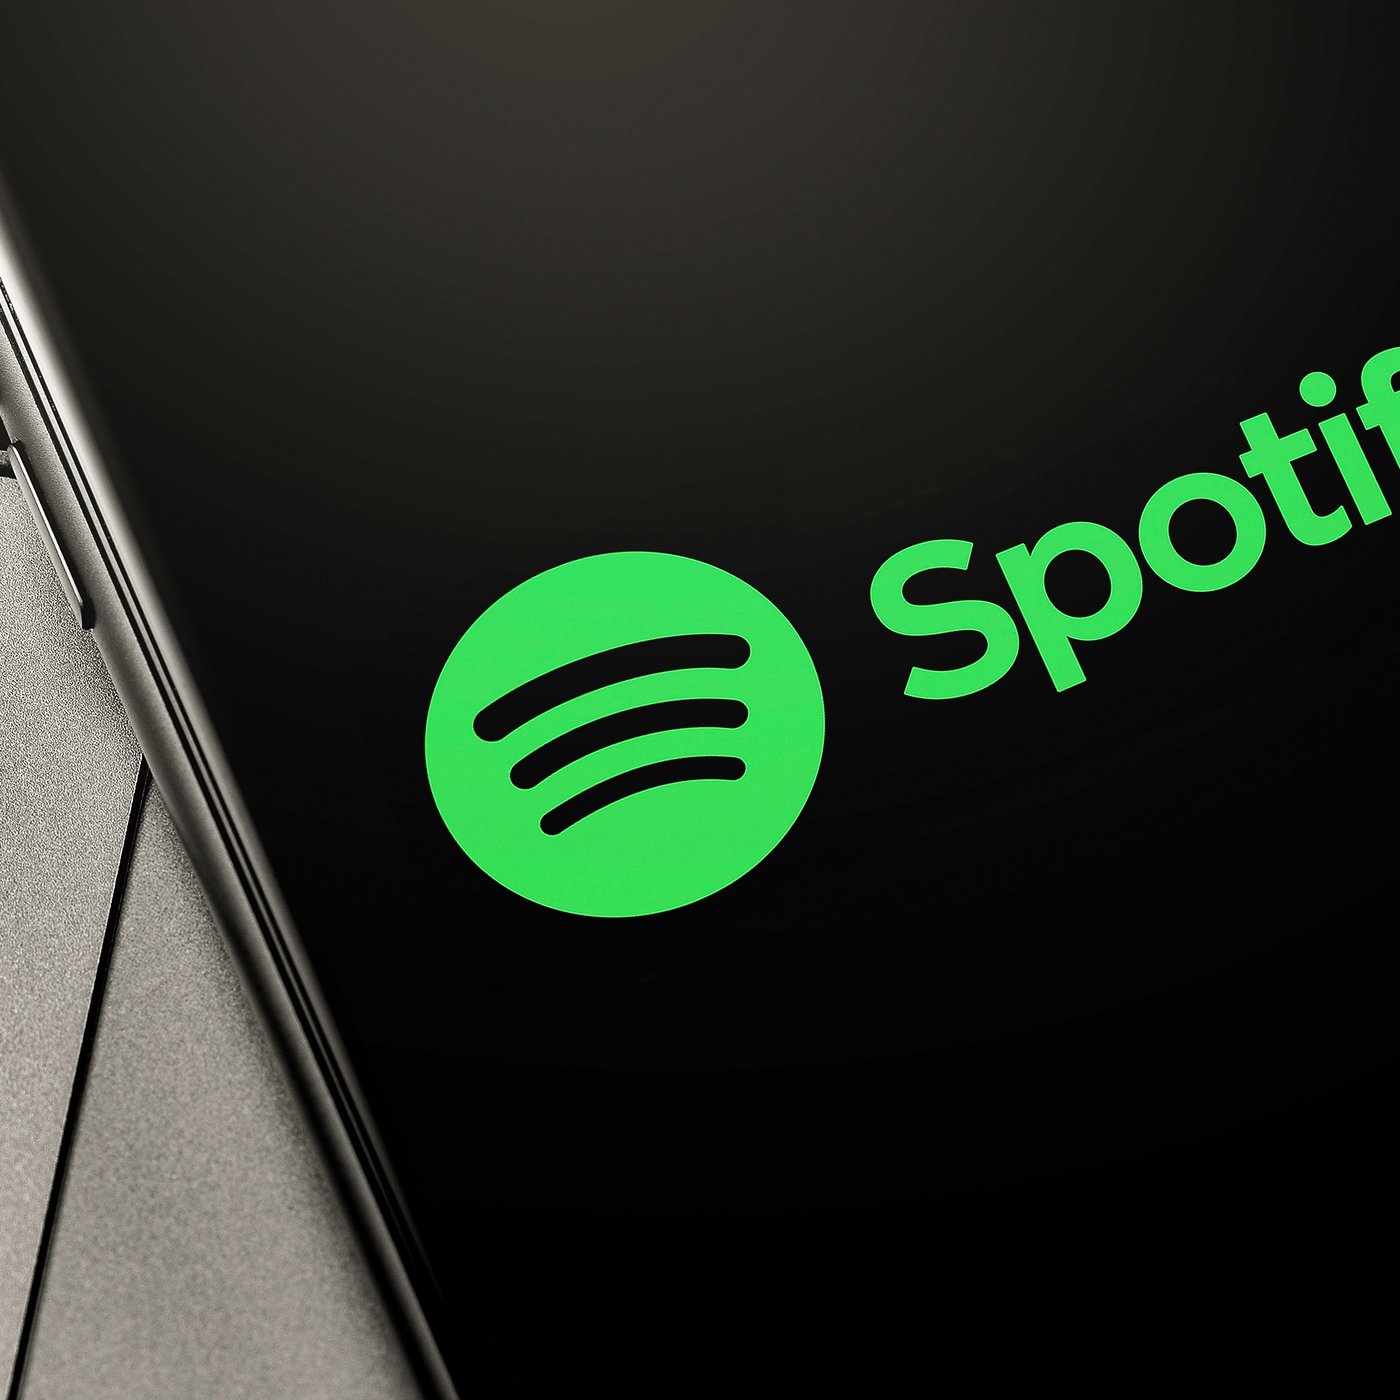 Spotify Premium Mini: planos diários e semanais são lançados na Índia